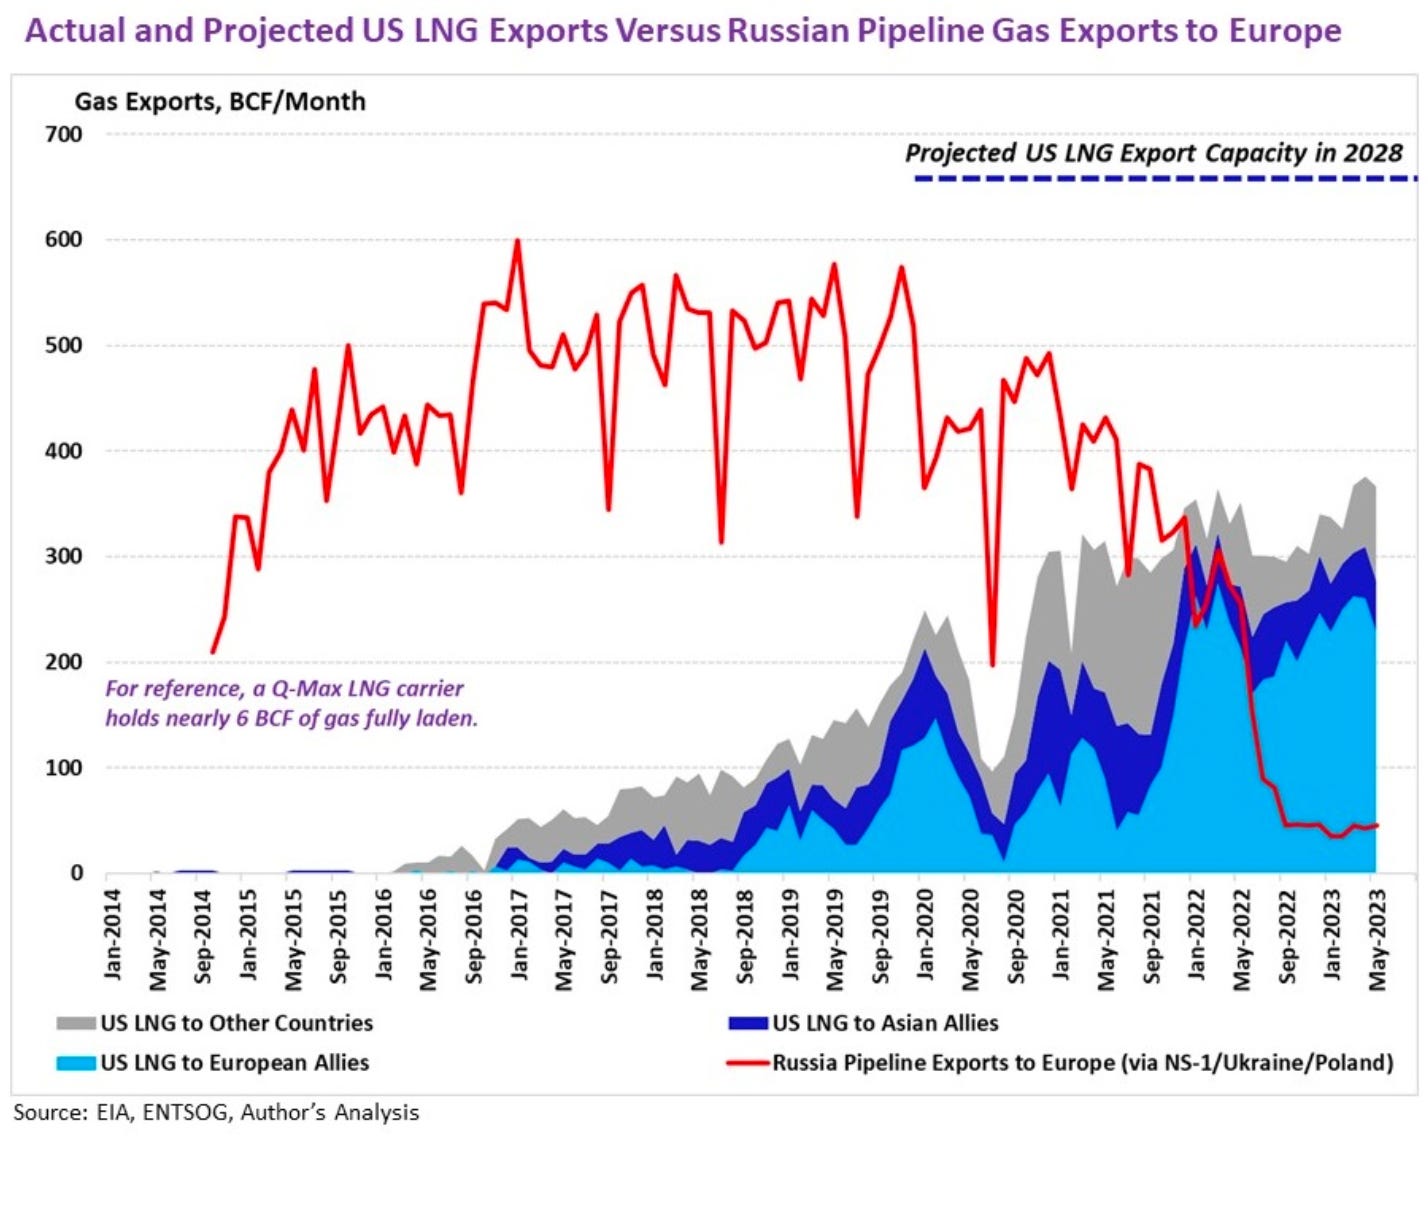 LNG Exports